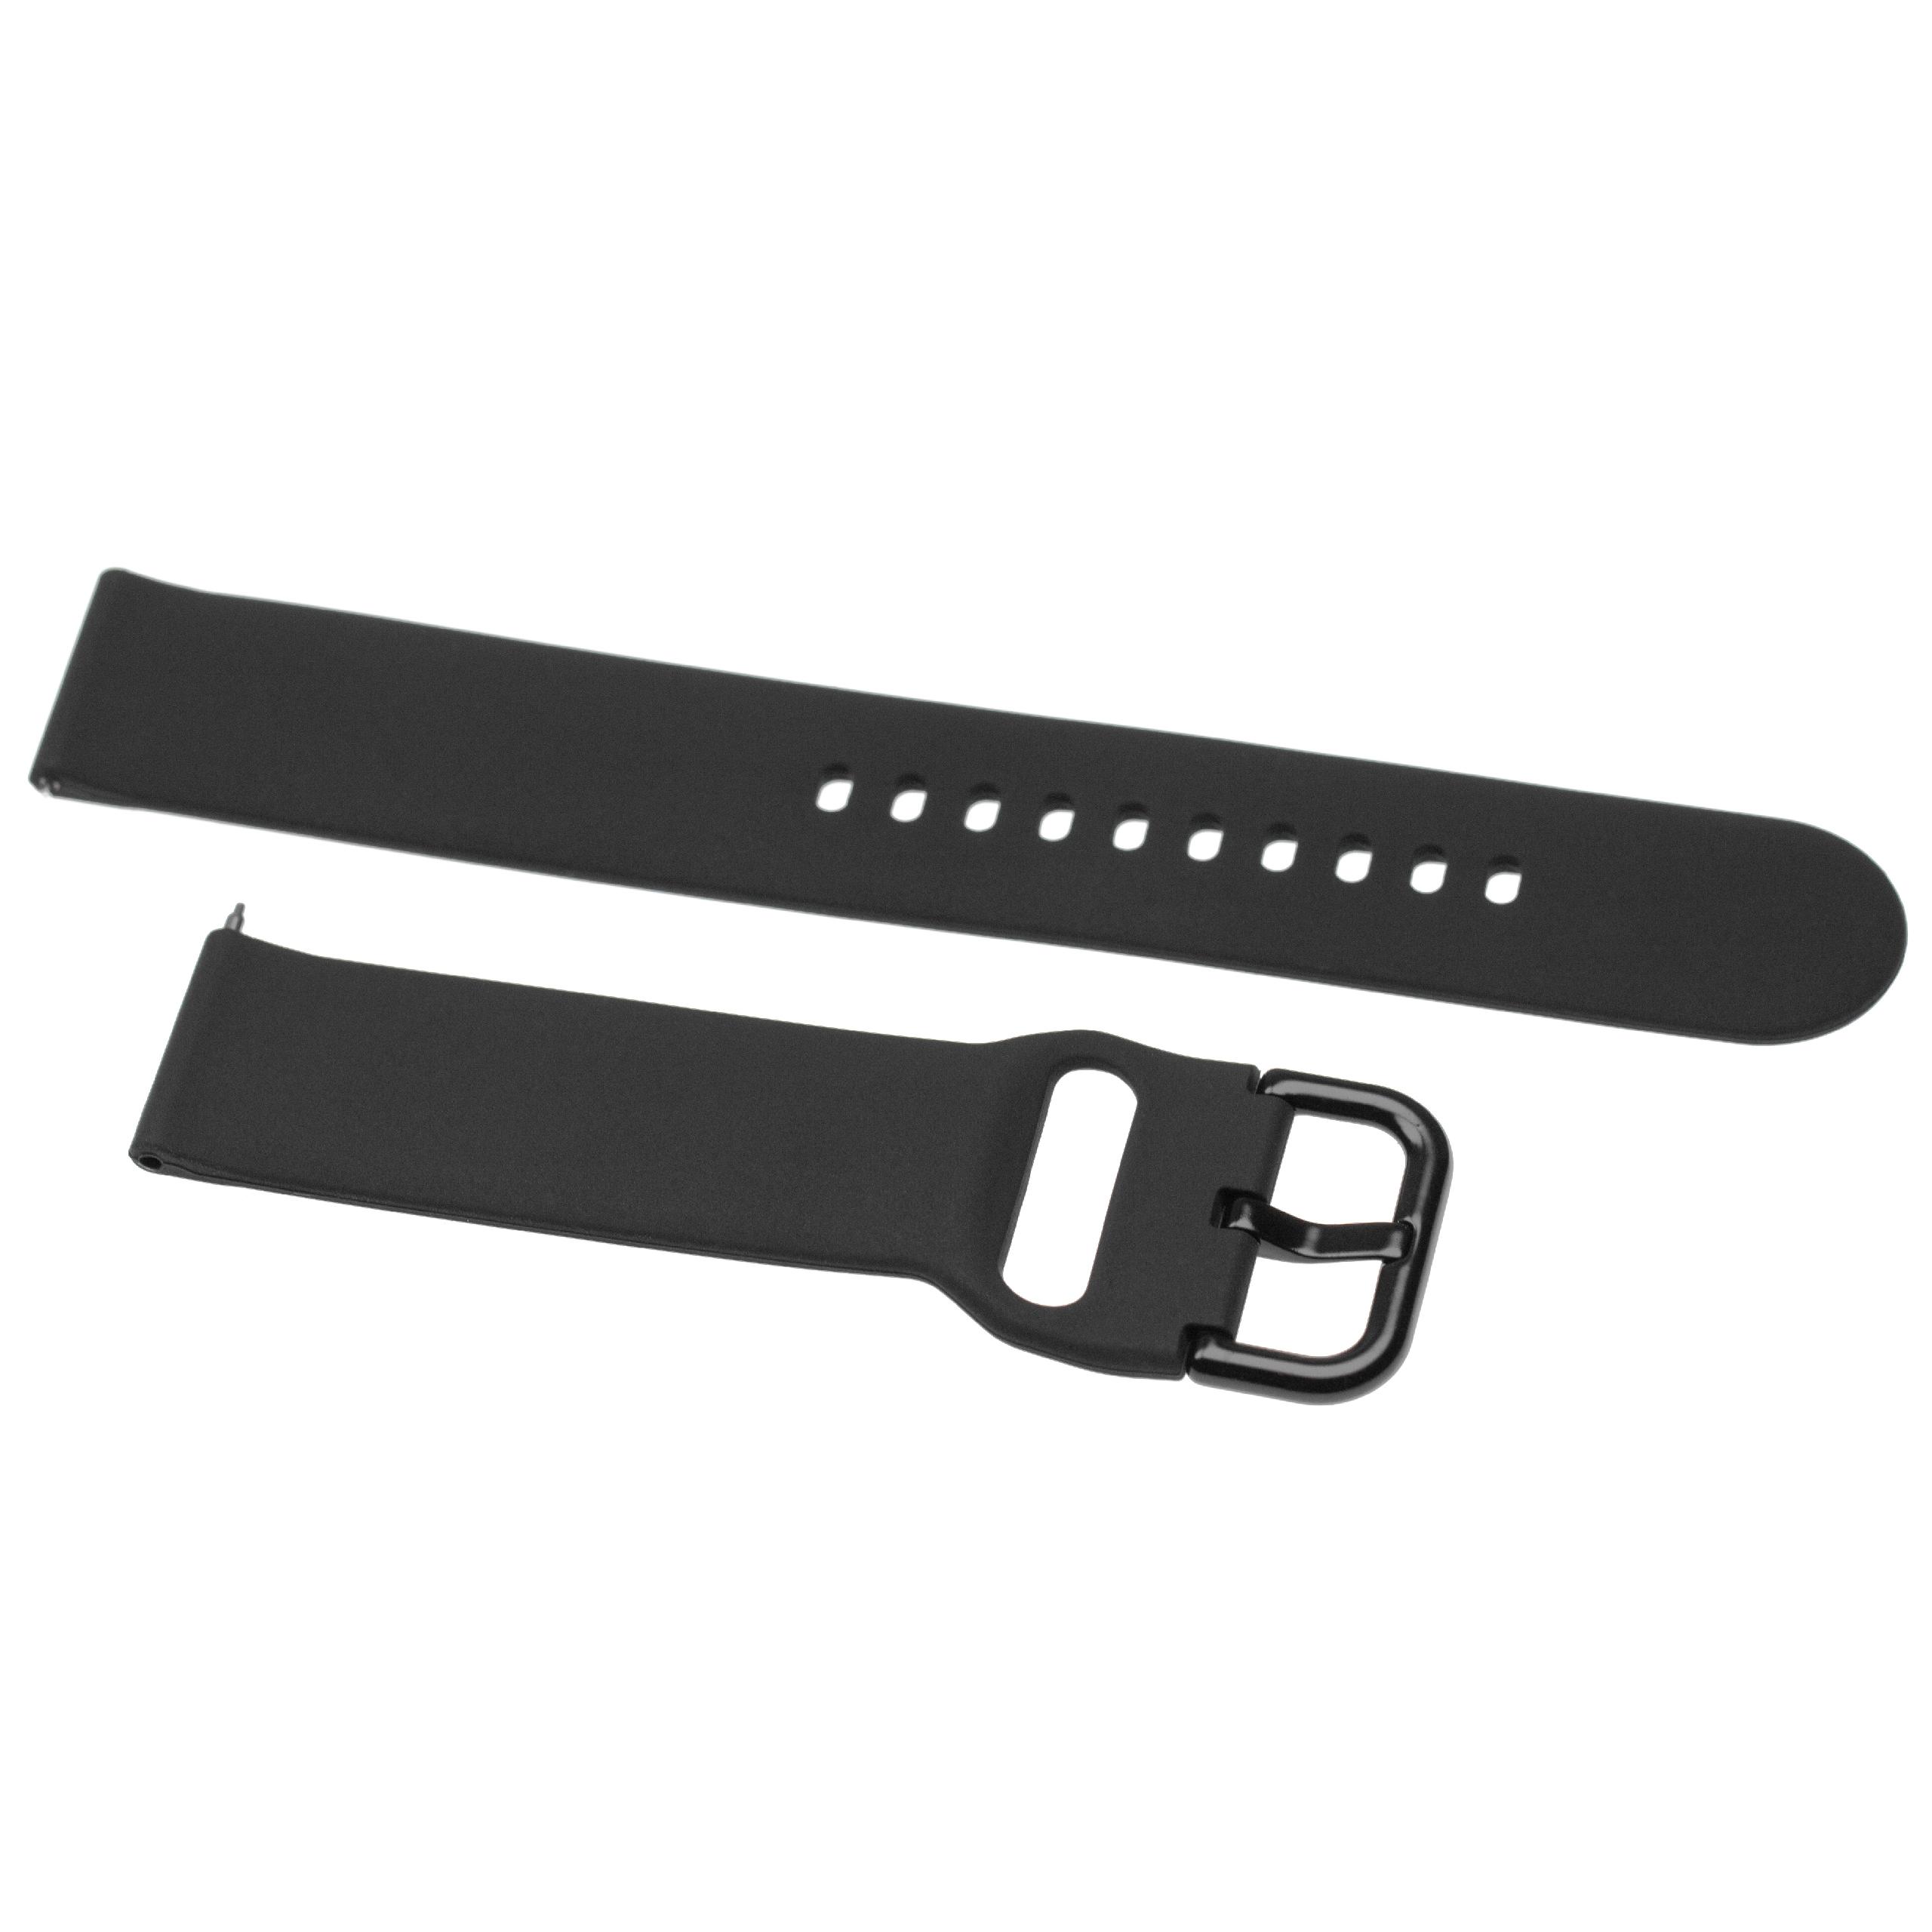 Bracelet pour montre intelligente Samsung Galaxy Watch - 13 + 8,8 cm de long, 20mm de large, silicone, noir